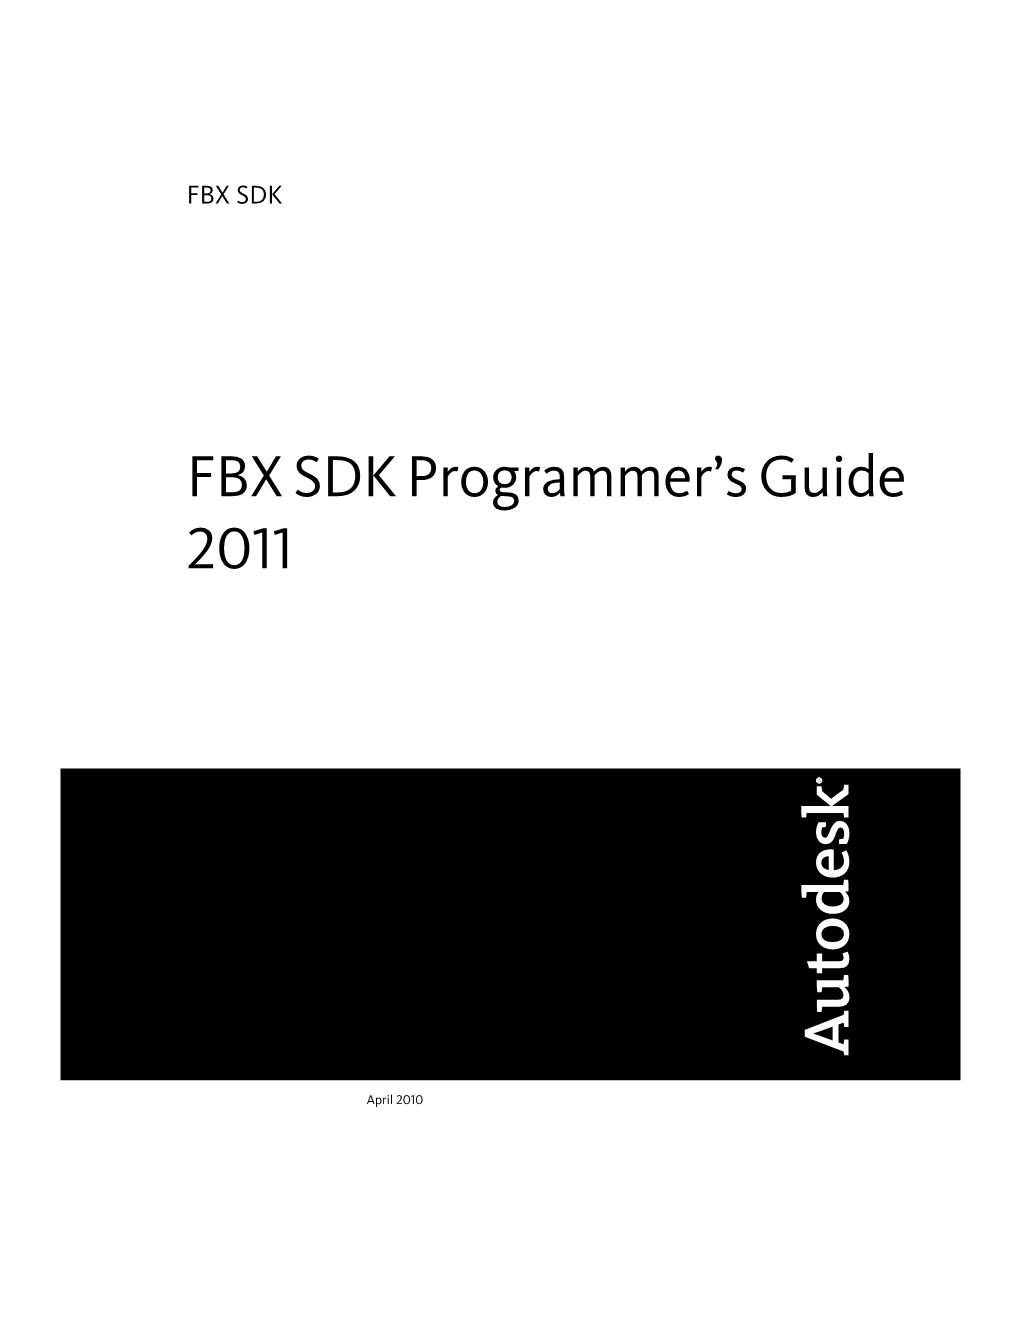 FBX SDK Programmeres Guide 2011